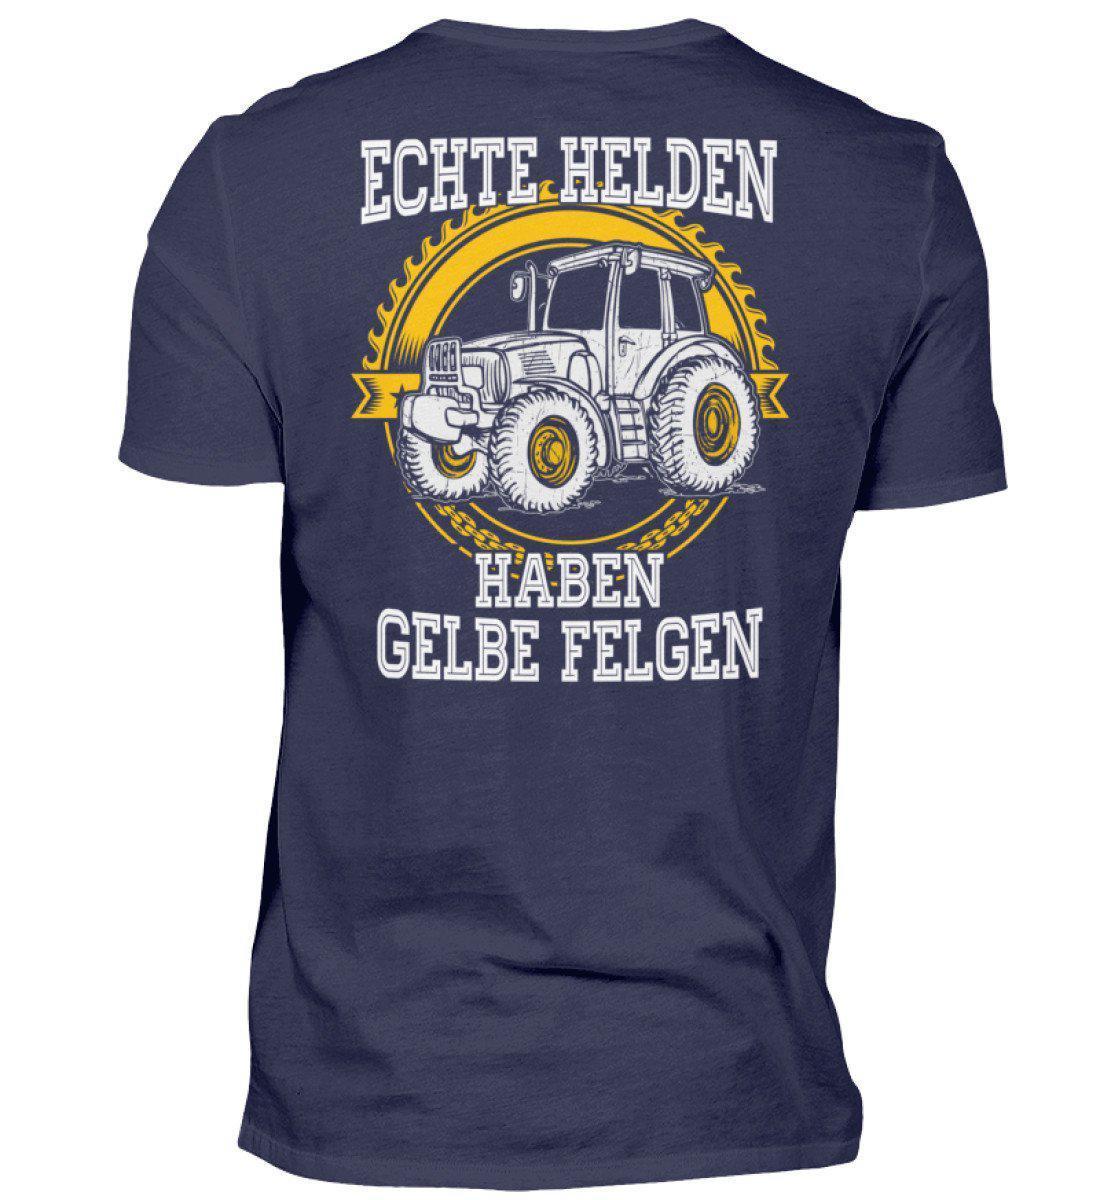 Echte Helden gelbe Felgen · Herren T-Shirt-Herren Basic T-Shirt-Navy-S-Agrarstarz